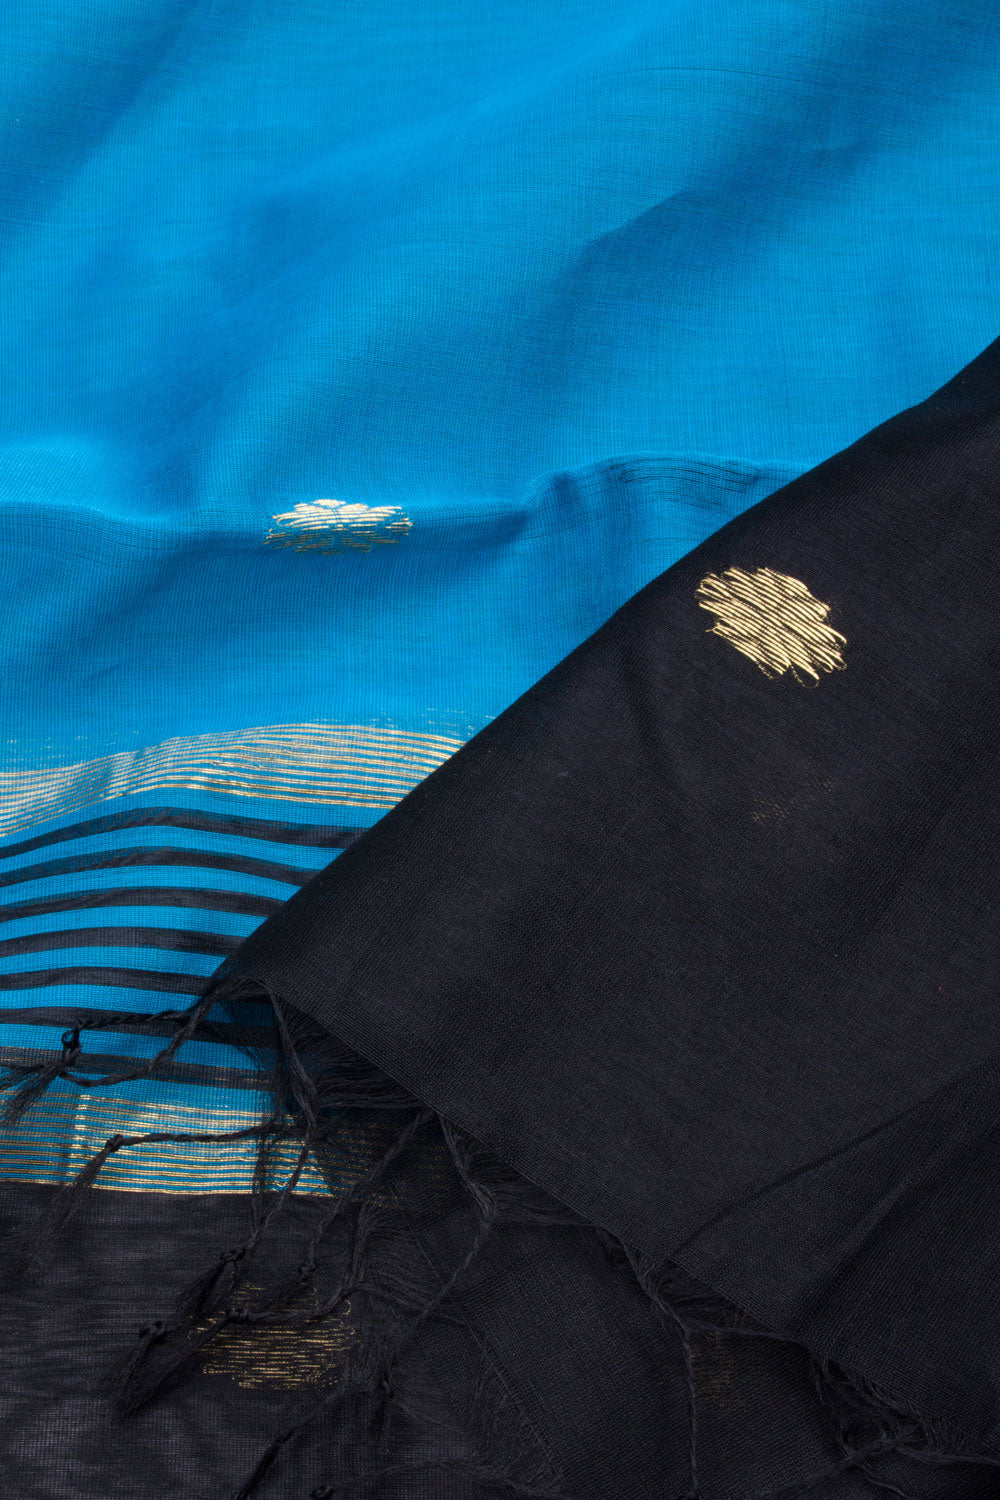 Black Maheshwari Silk Cotton 2 pc Salwar Suit Material 10062199